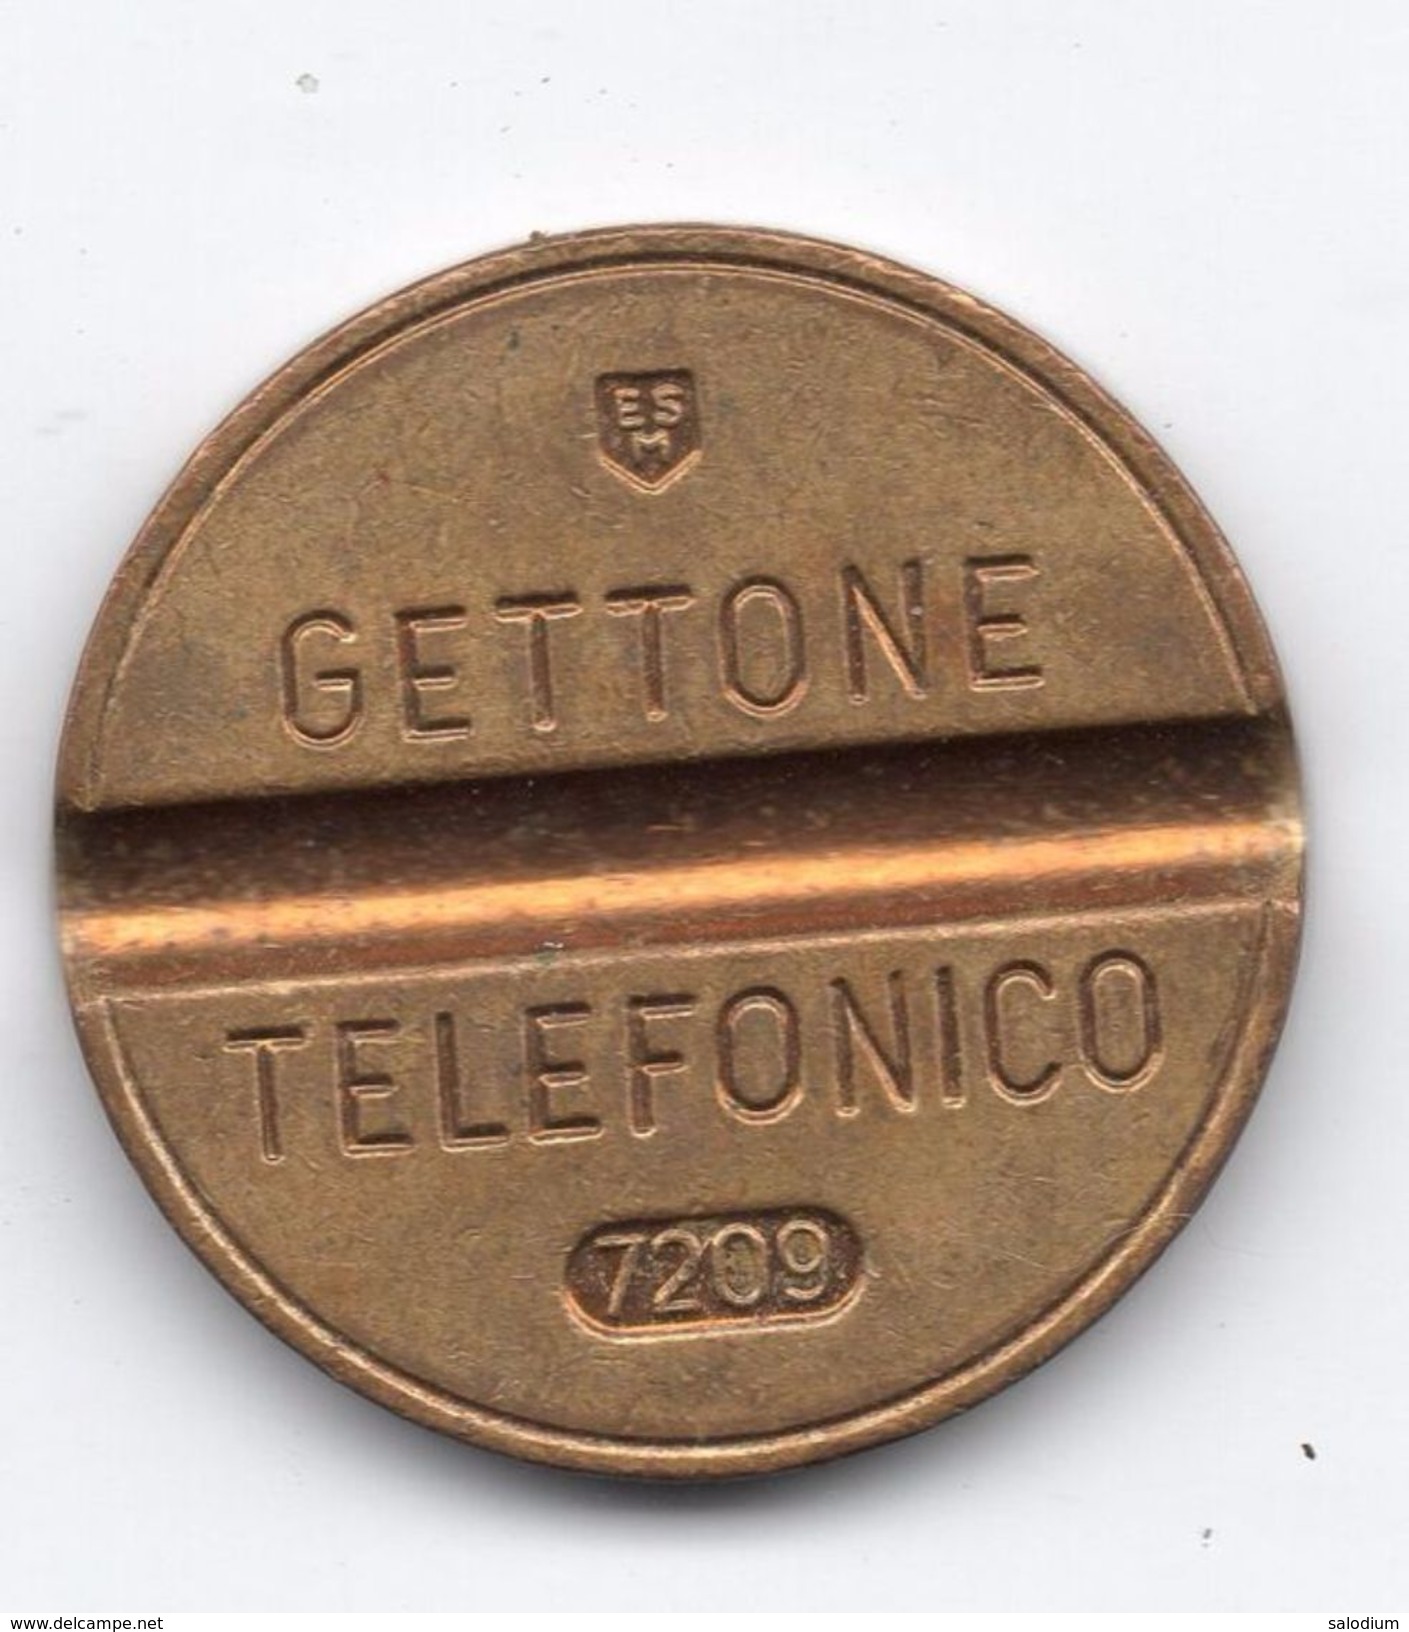 Gettone Telefonico 7209 Token Telephone - (Id-786) - Professionnels/De Société